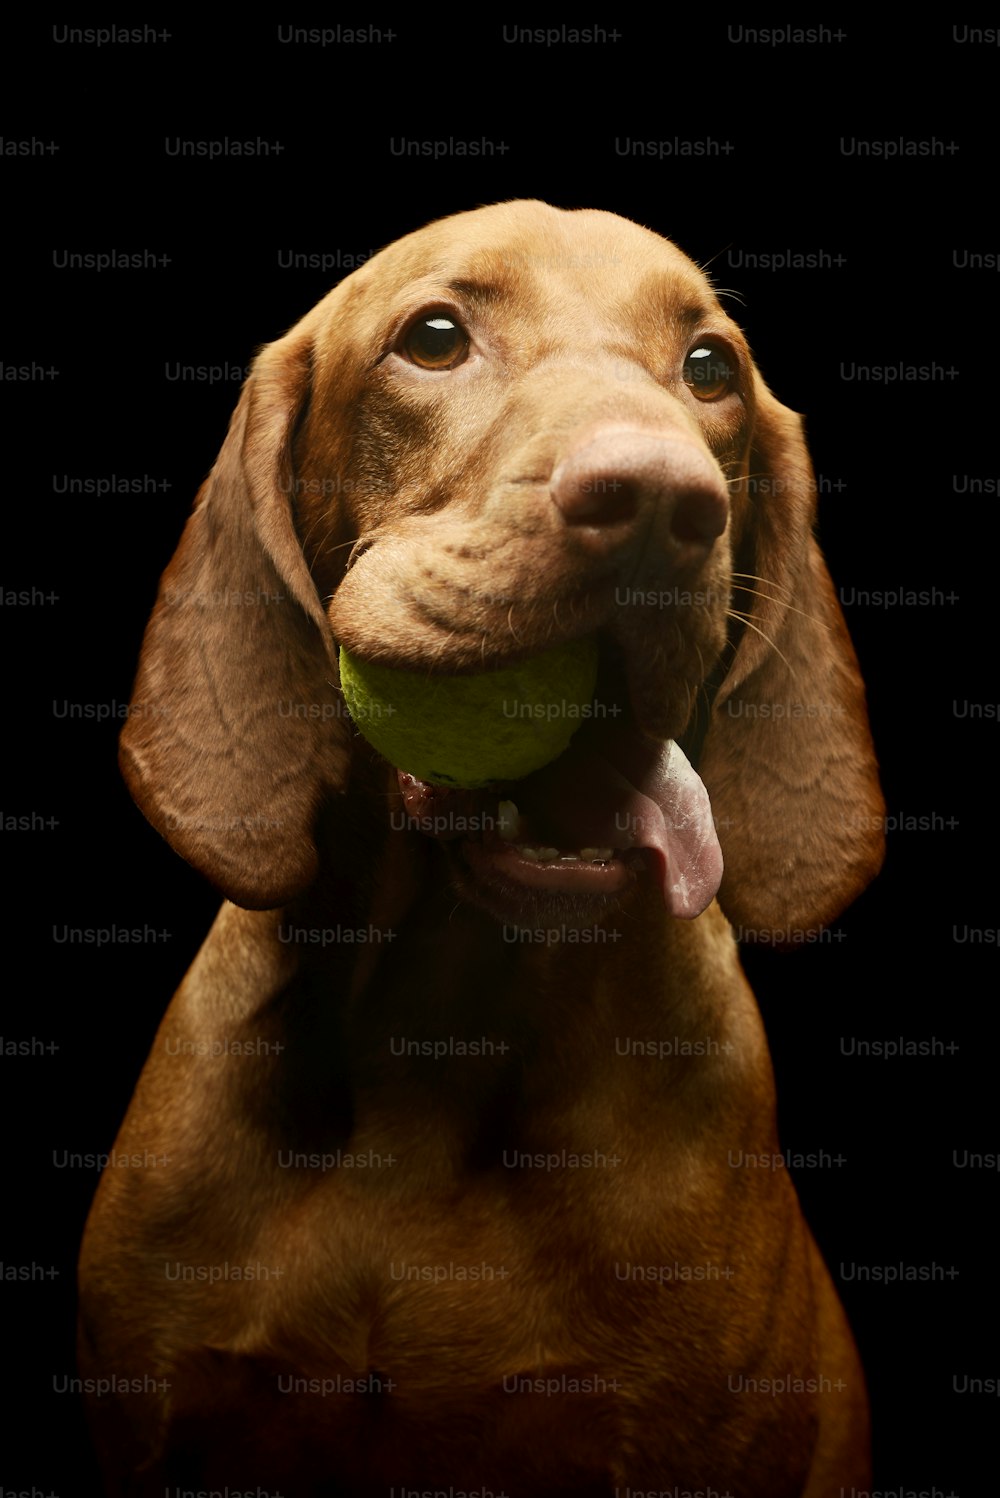 テニスボールを口にくわえた愛らしいマジャール・ヴィズラの肖像画